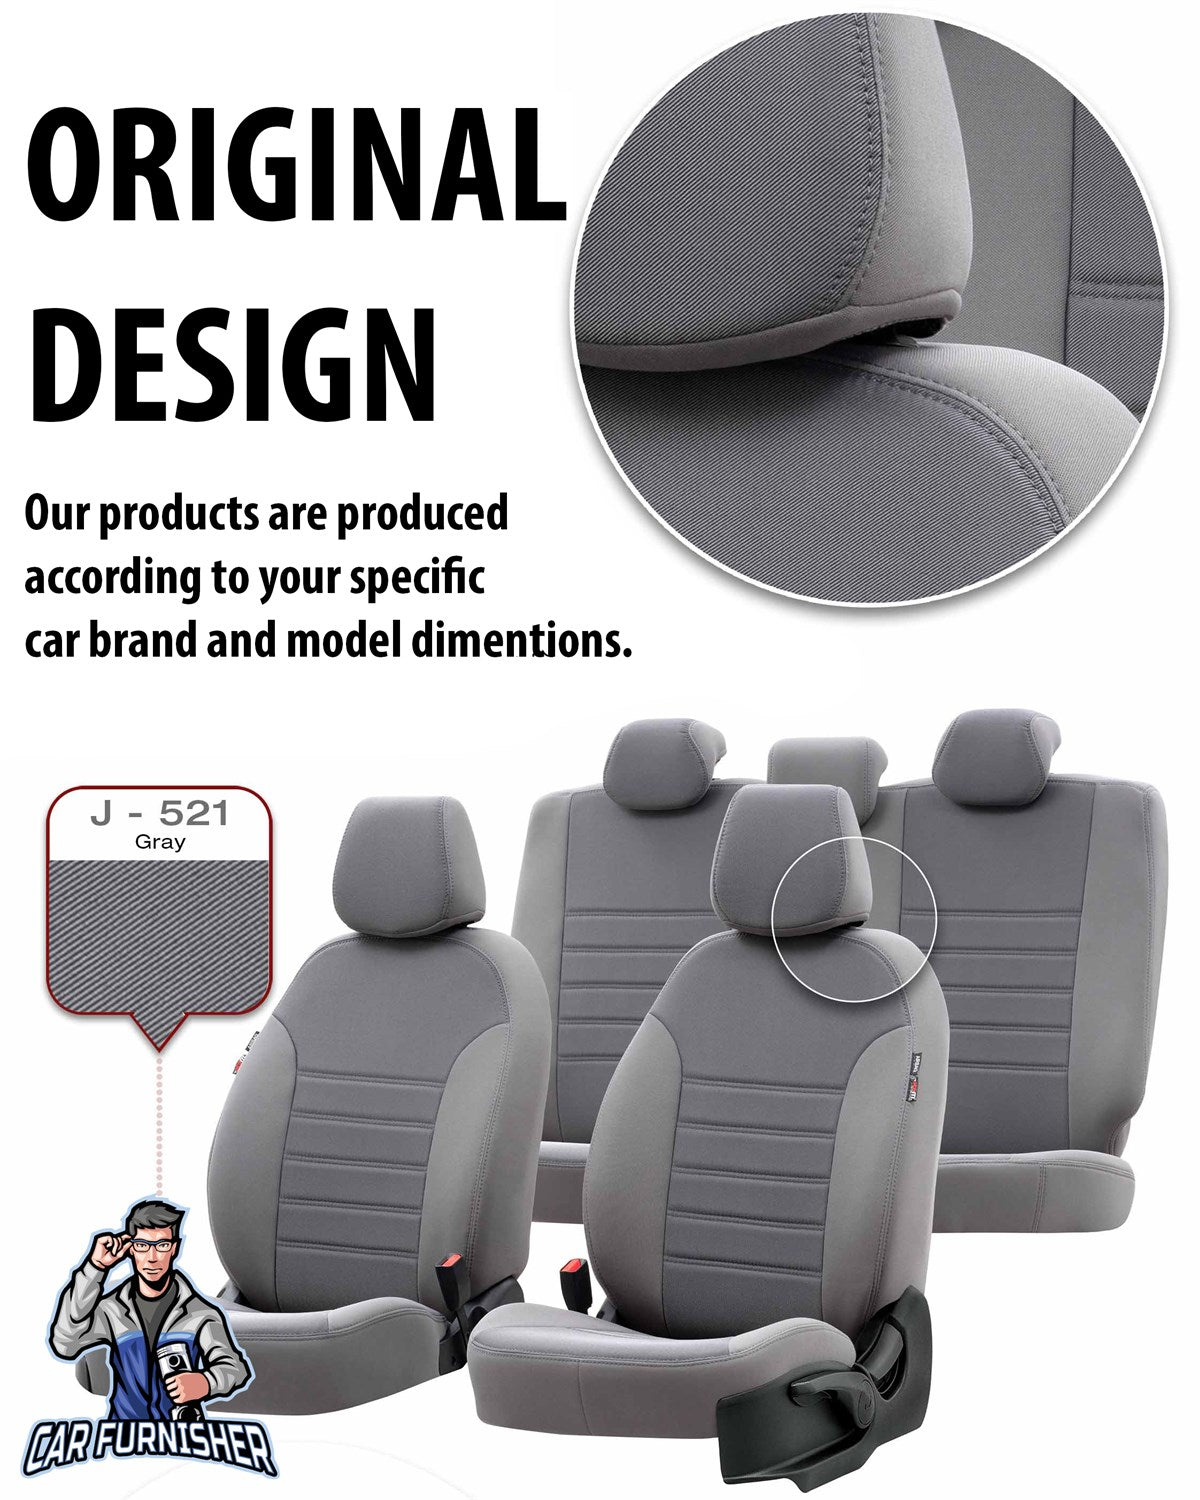 Volkswagen T-Roc Seat Cover Original Jacquard Design Black Jacquard Fabric